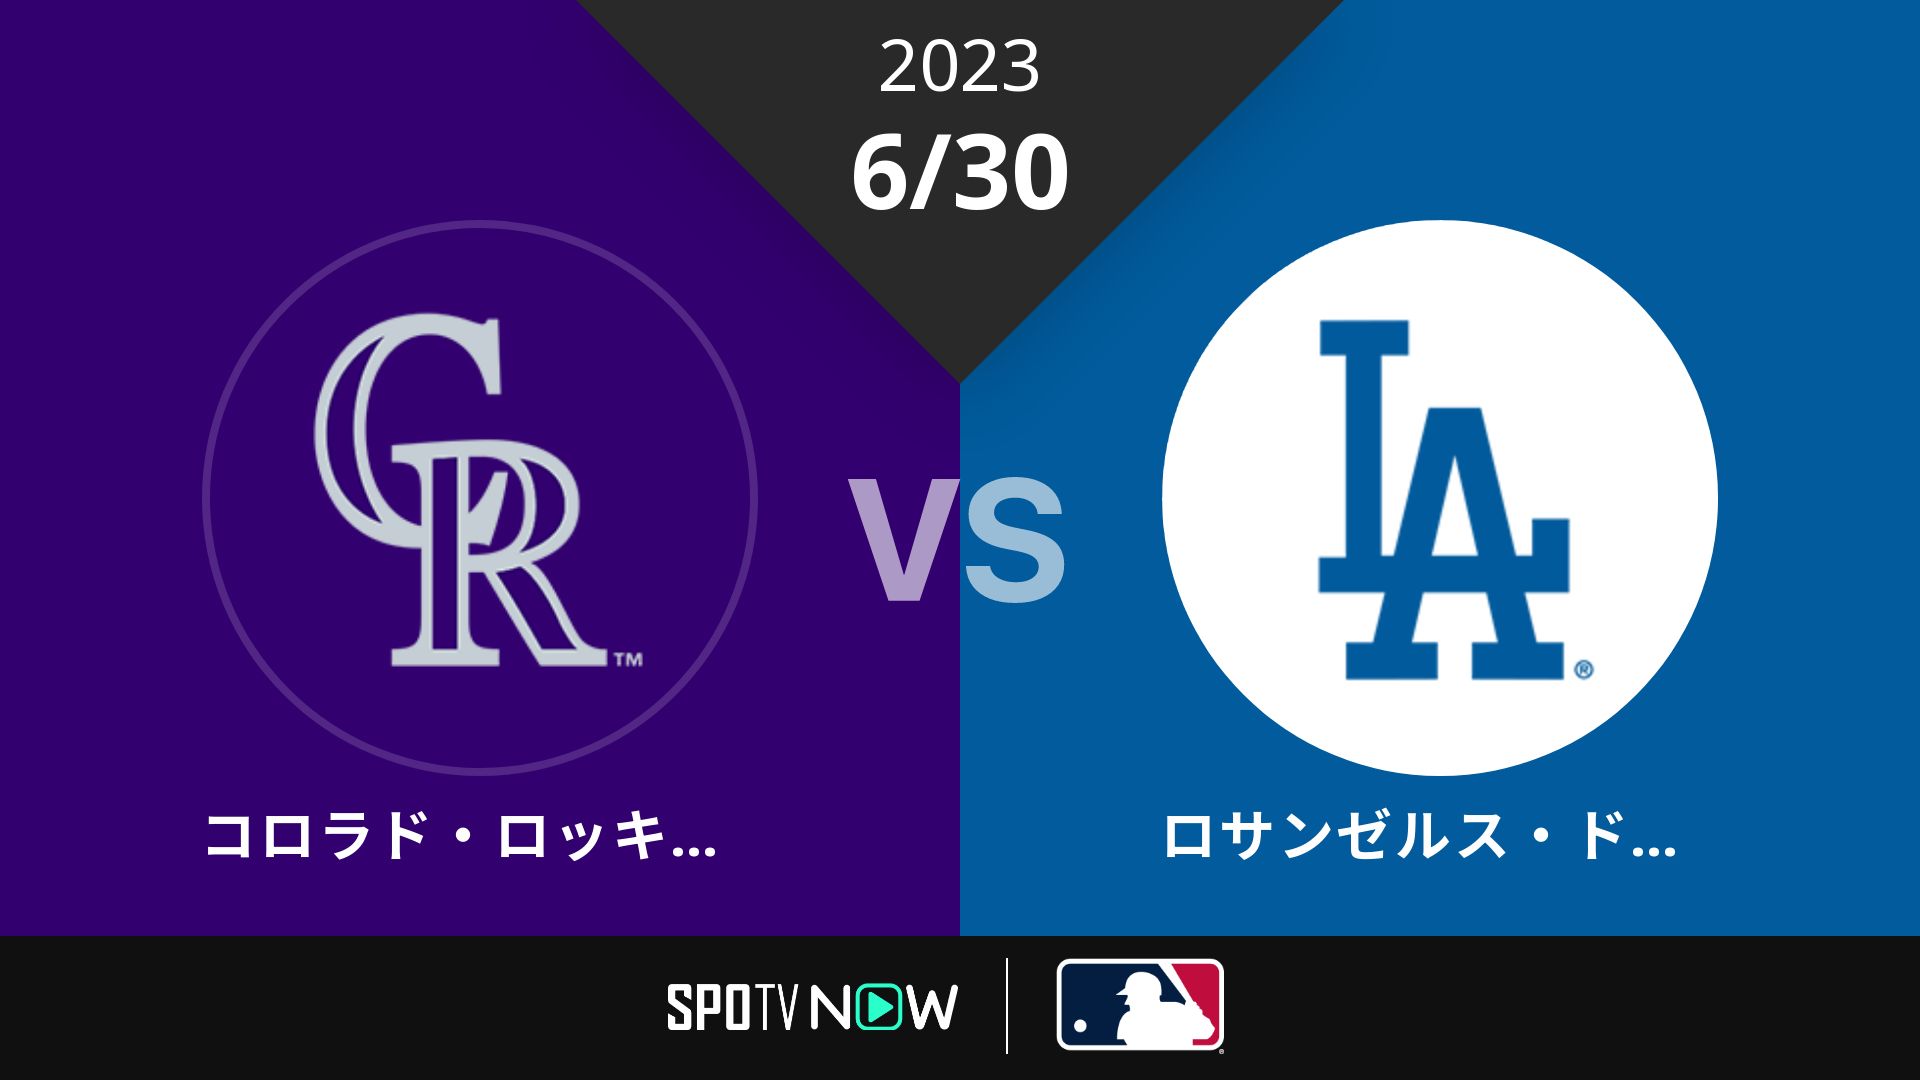 2023/6/30 ロッキーズ vs ドジャース [MLB]